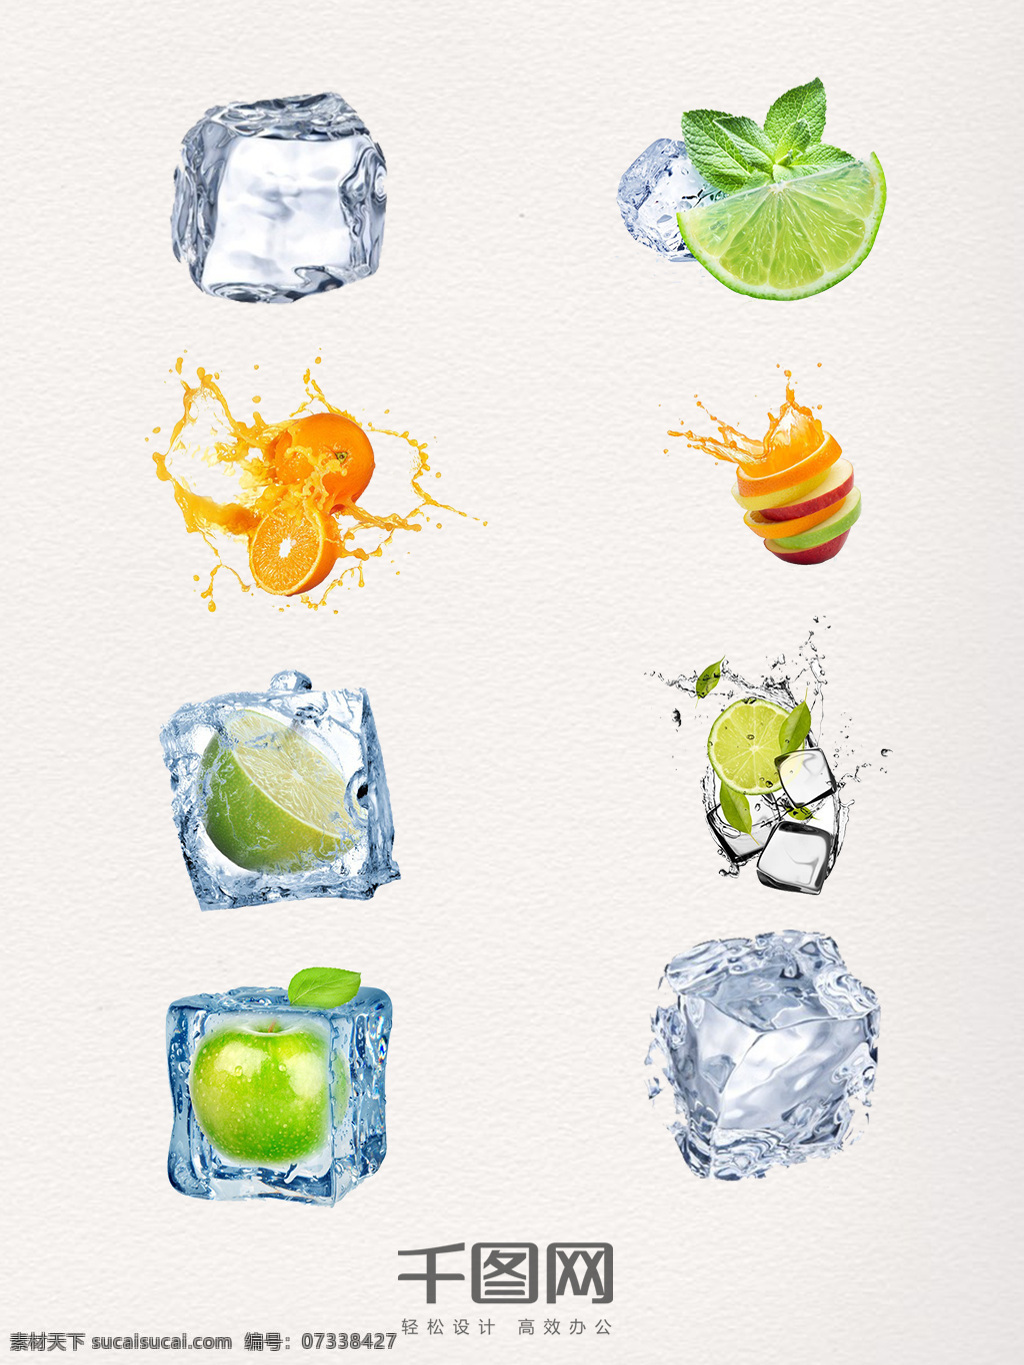 组 多样 果 饮 组合 元素 图案 冰块 果饮 水果 果汁 夏天 冰爽 饮料 美食